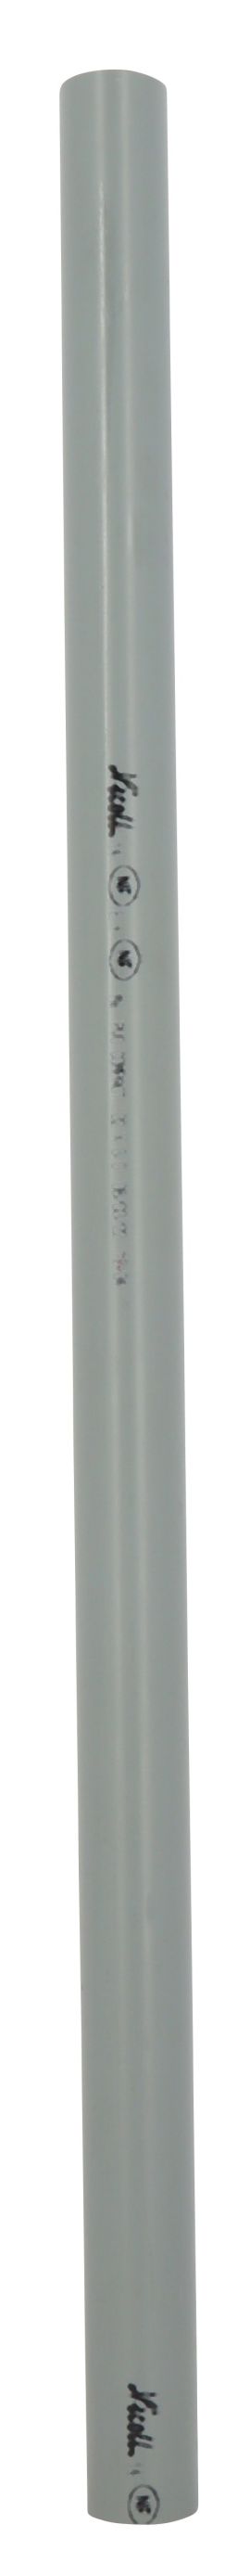 Tube d'évacuation PVC Ø 32, épaisseur 3 mm, 4 m, gris